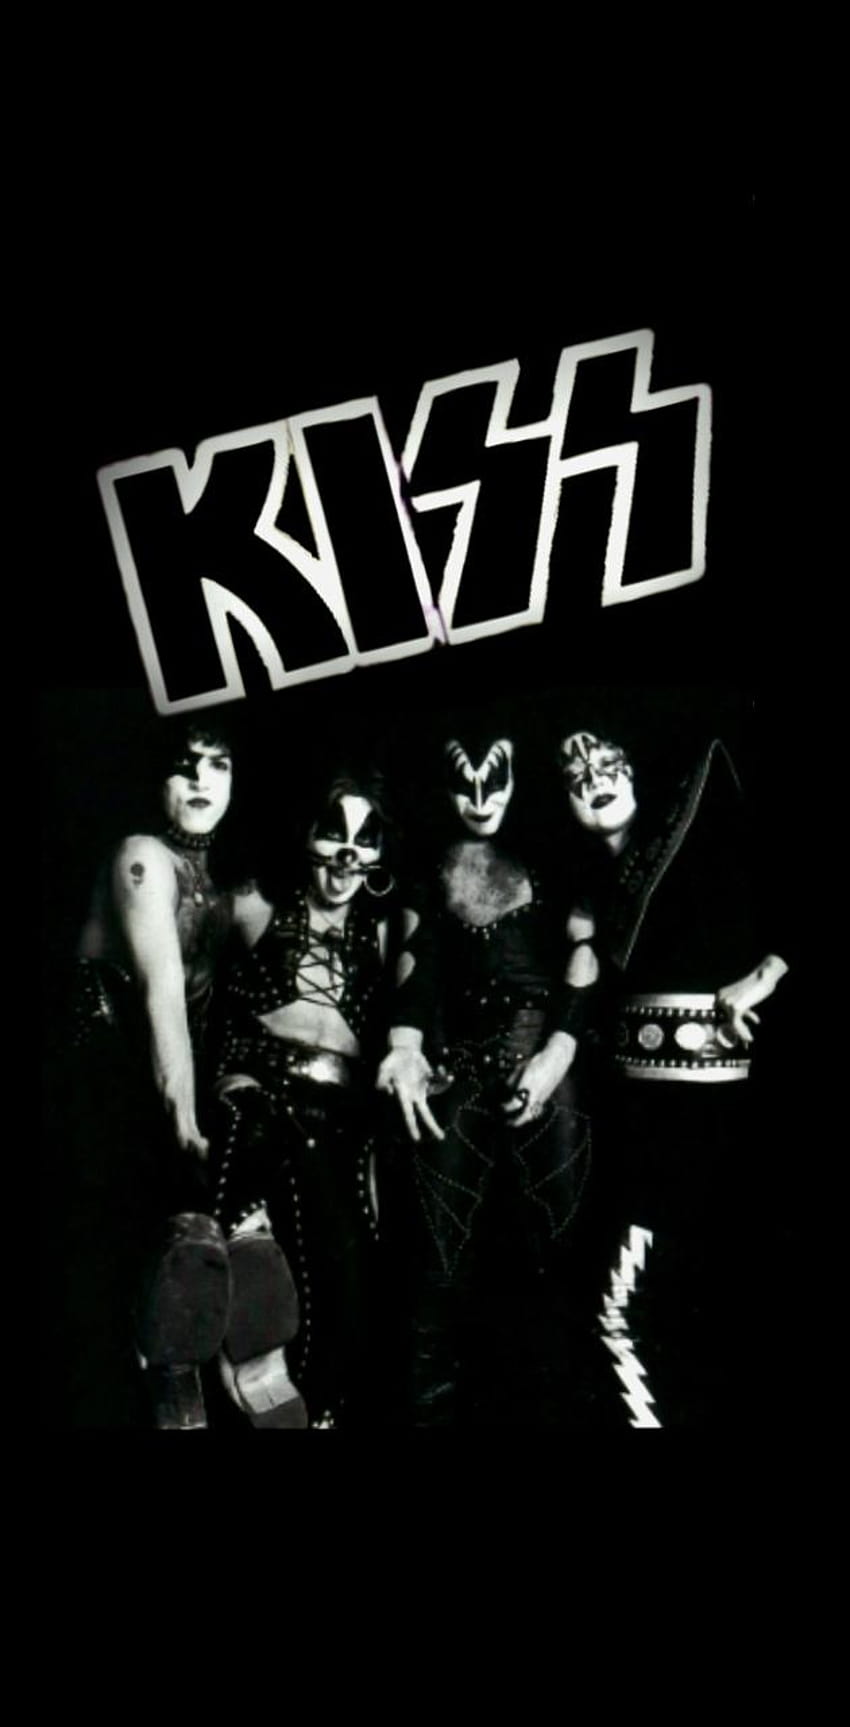 Leon494 tarafından Kiss grubu, öpücük rock grubu HD telefon duvar kağıdı